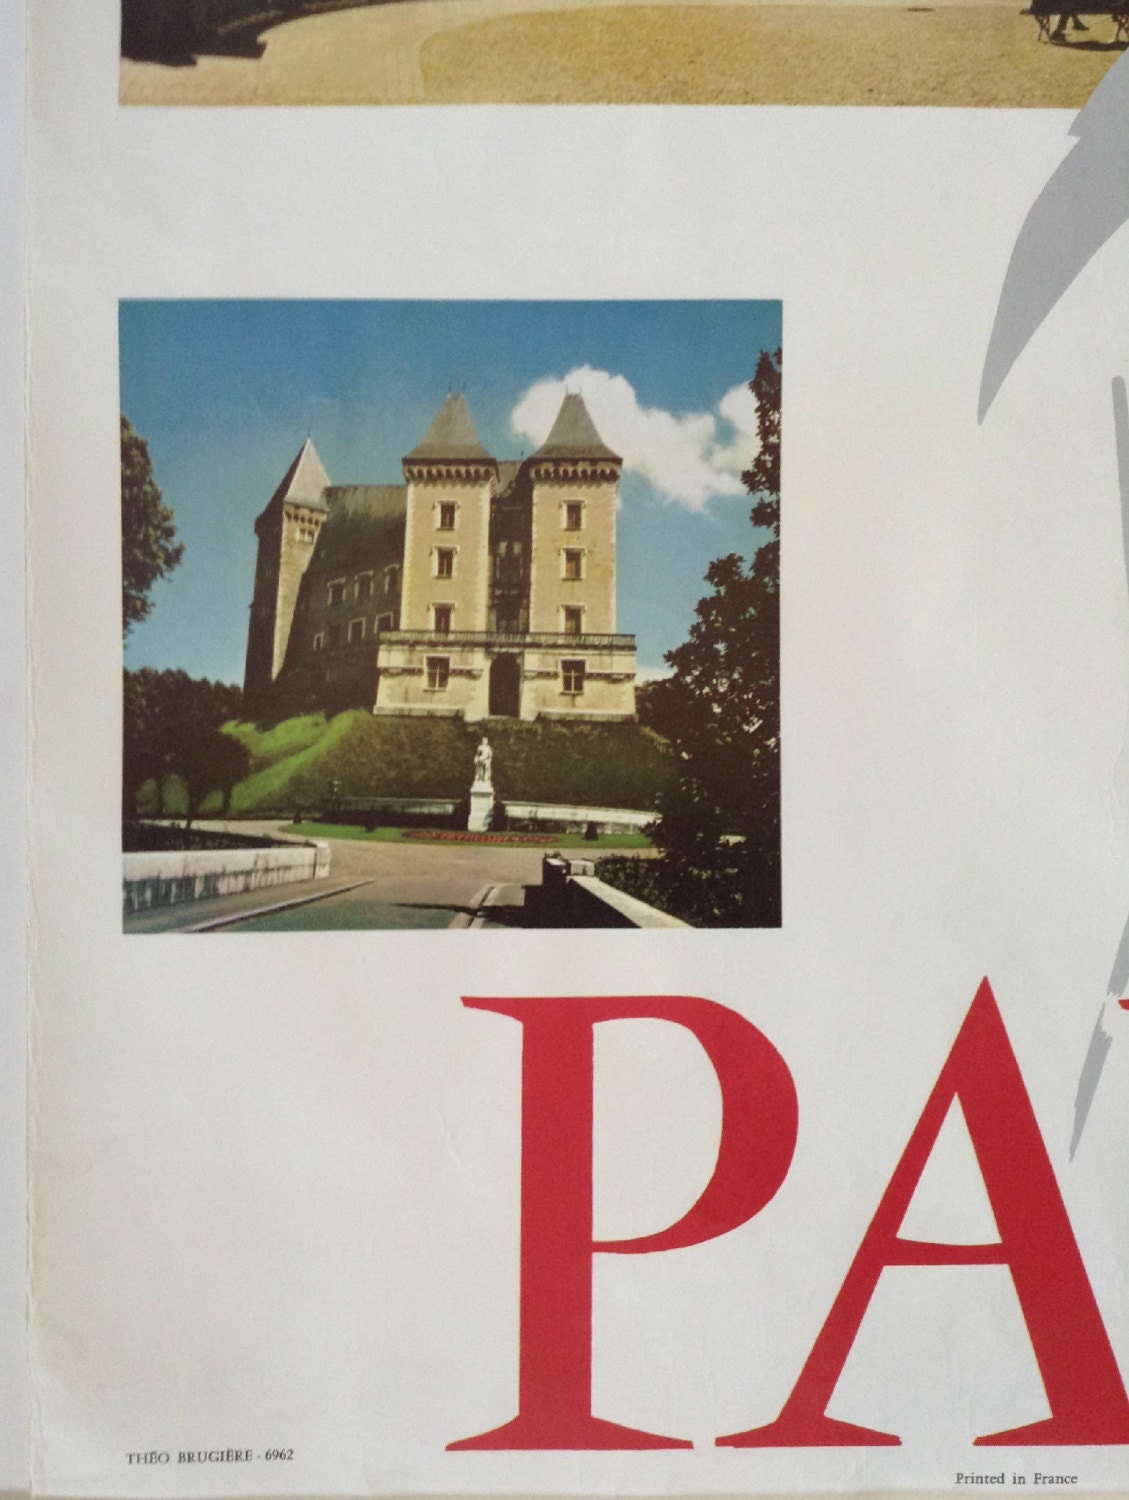 1960s Pau France Travel Poster - Original Vintage Poster